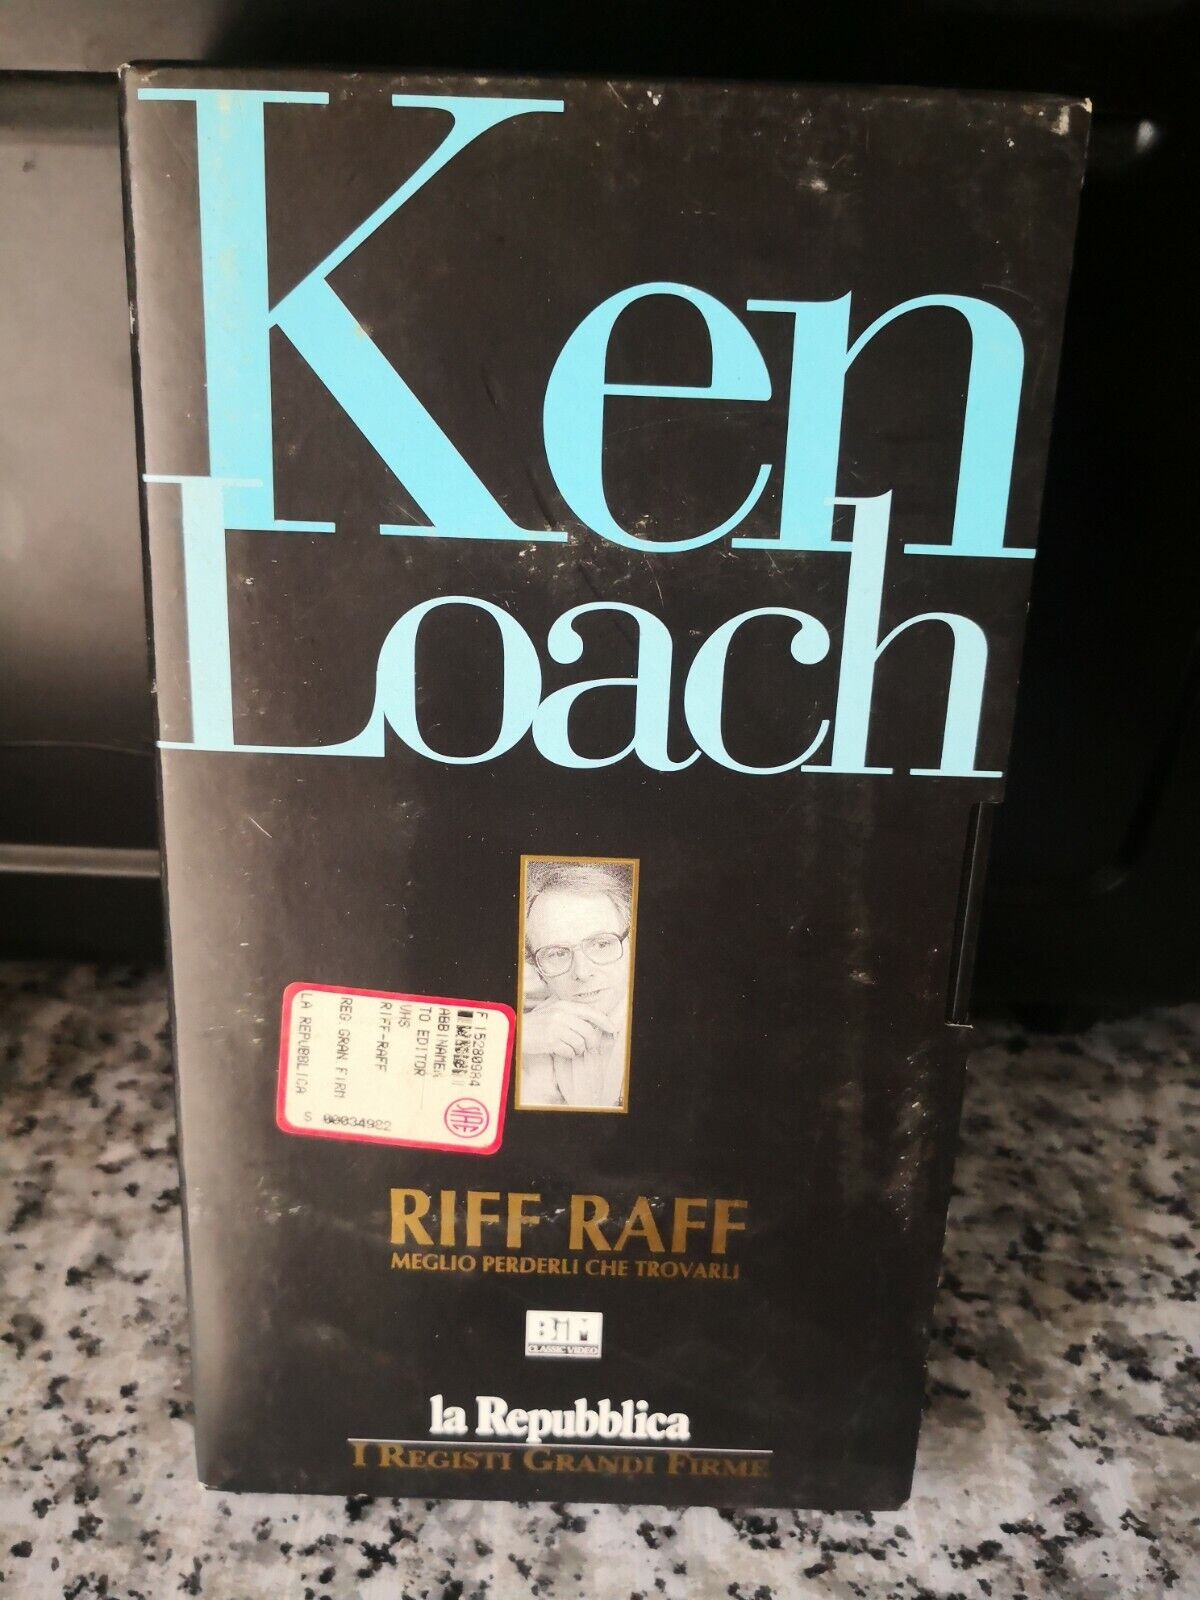 Ken Loach - Riff Raff - vhs - 1991 - La repubblica -F vhs usato